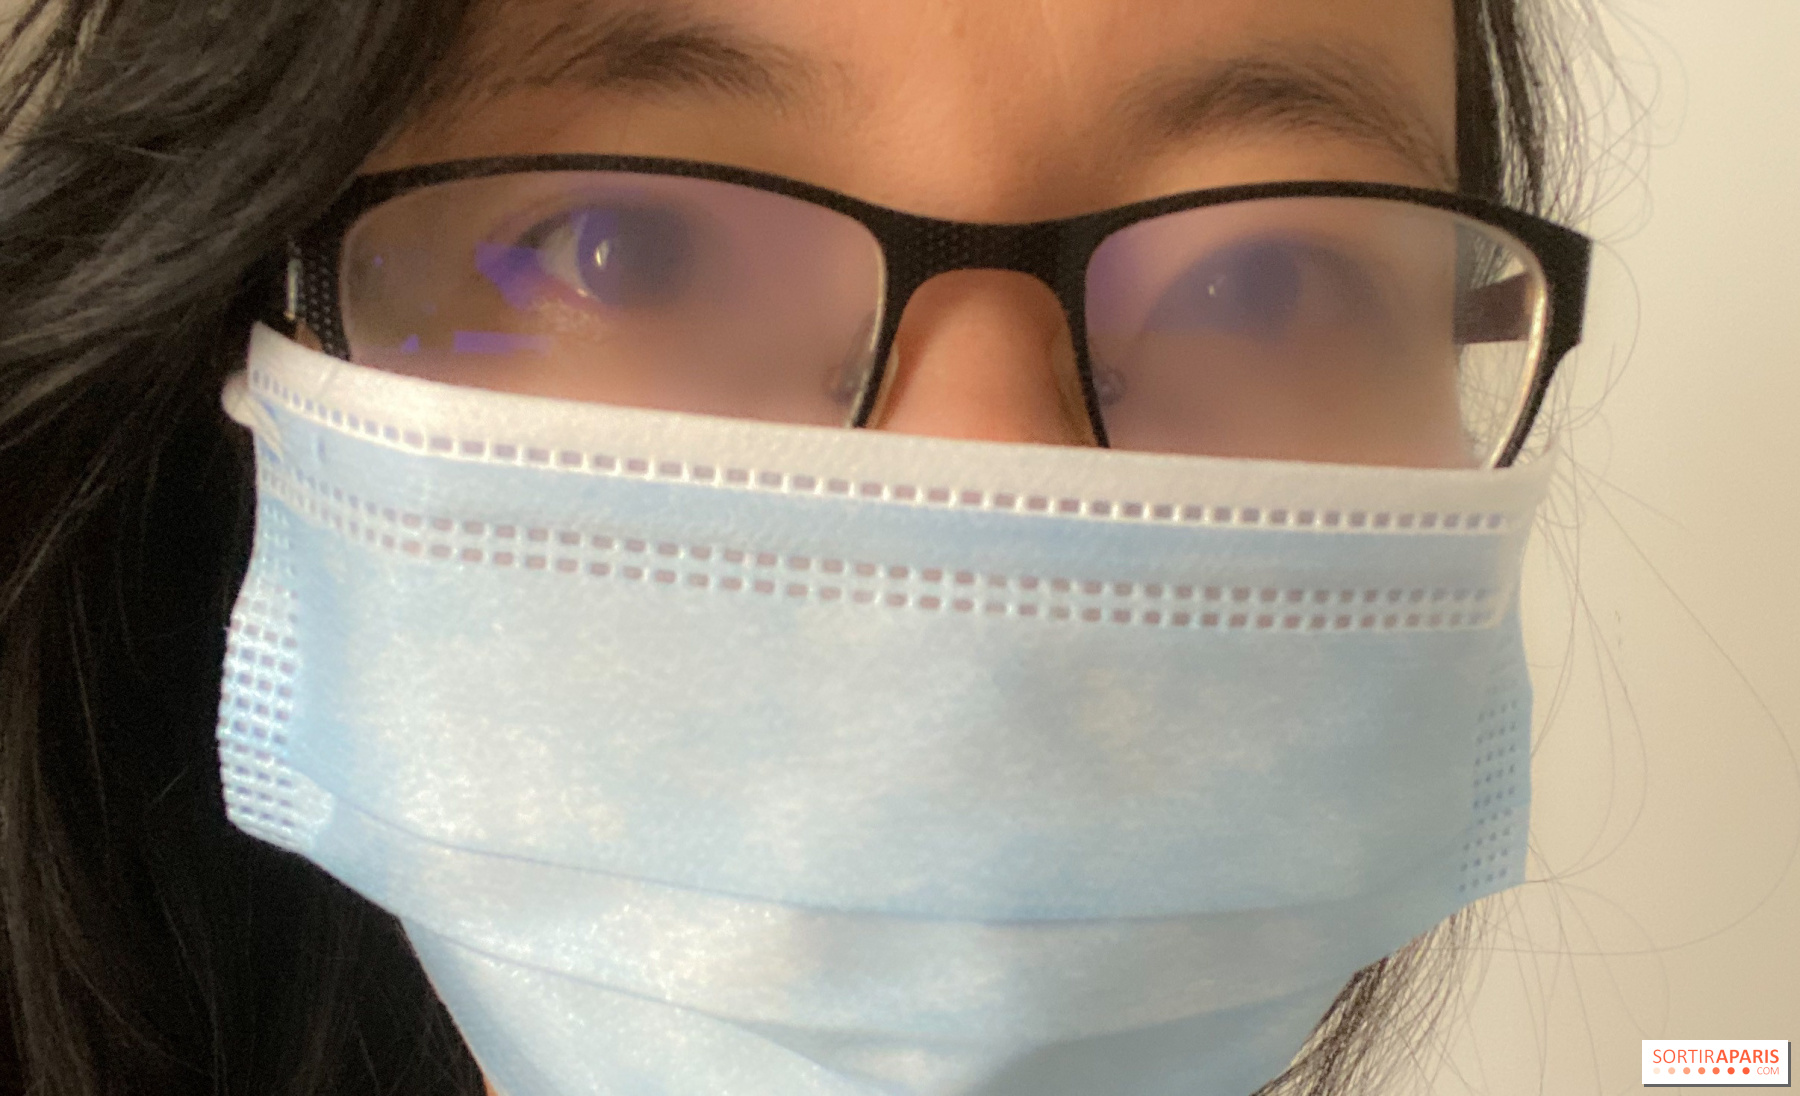 Comment éviter la buée dans ses lunettes lorsqu'on porte un masque?, COVID-19  : tout sur la pandémie